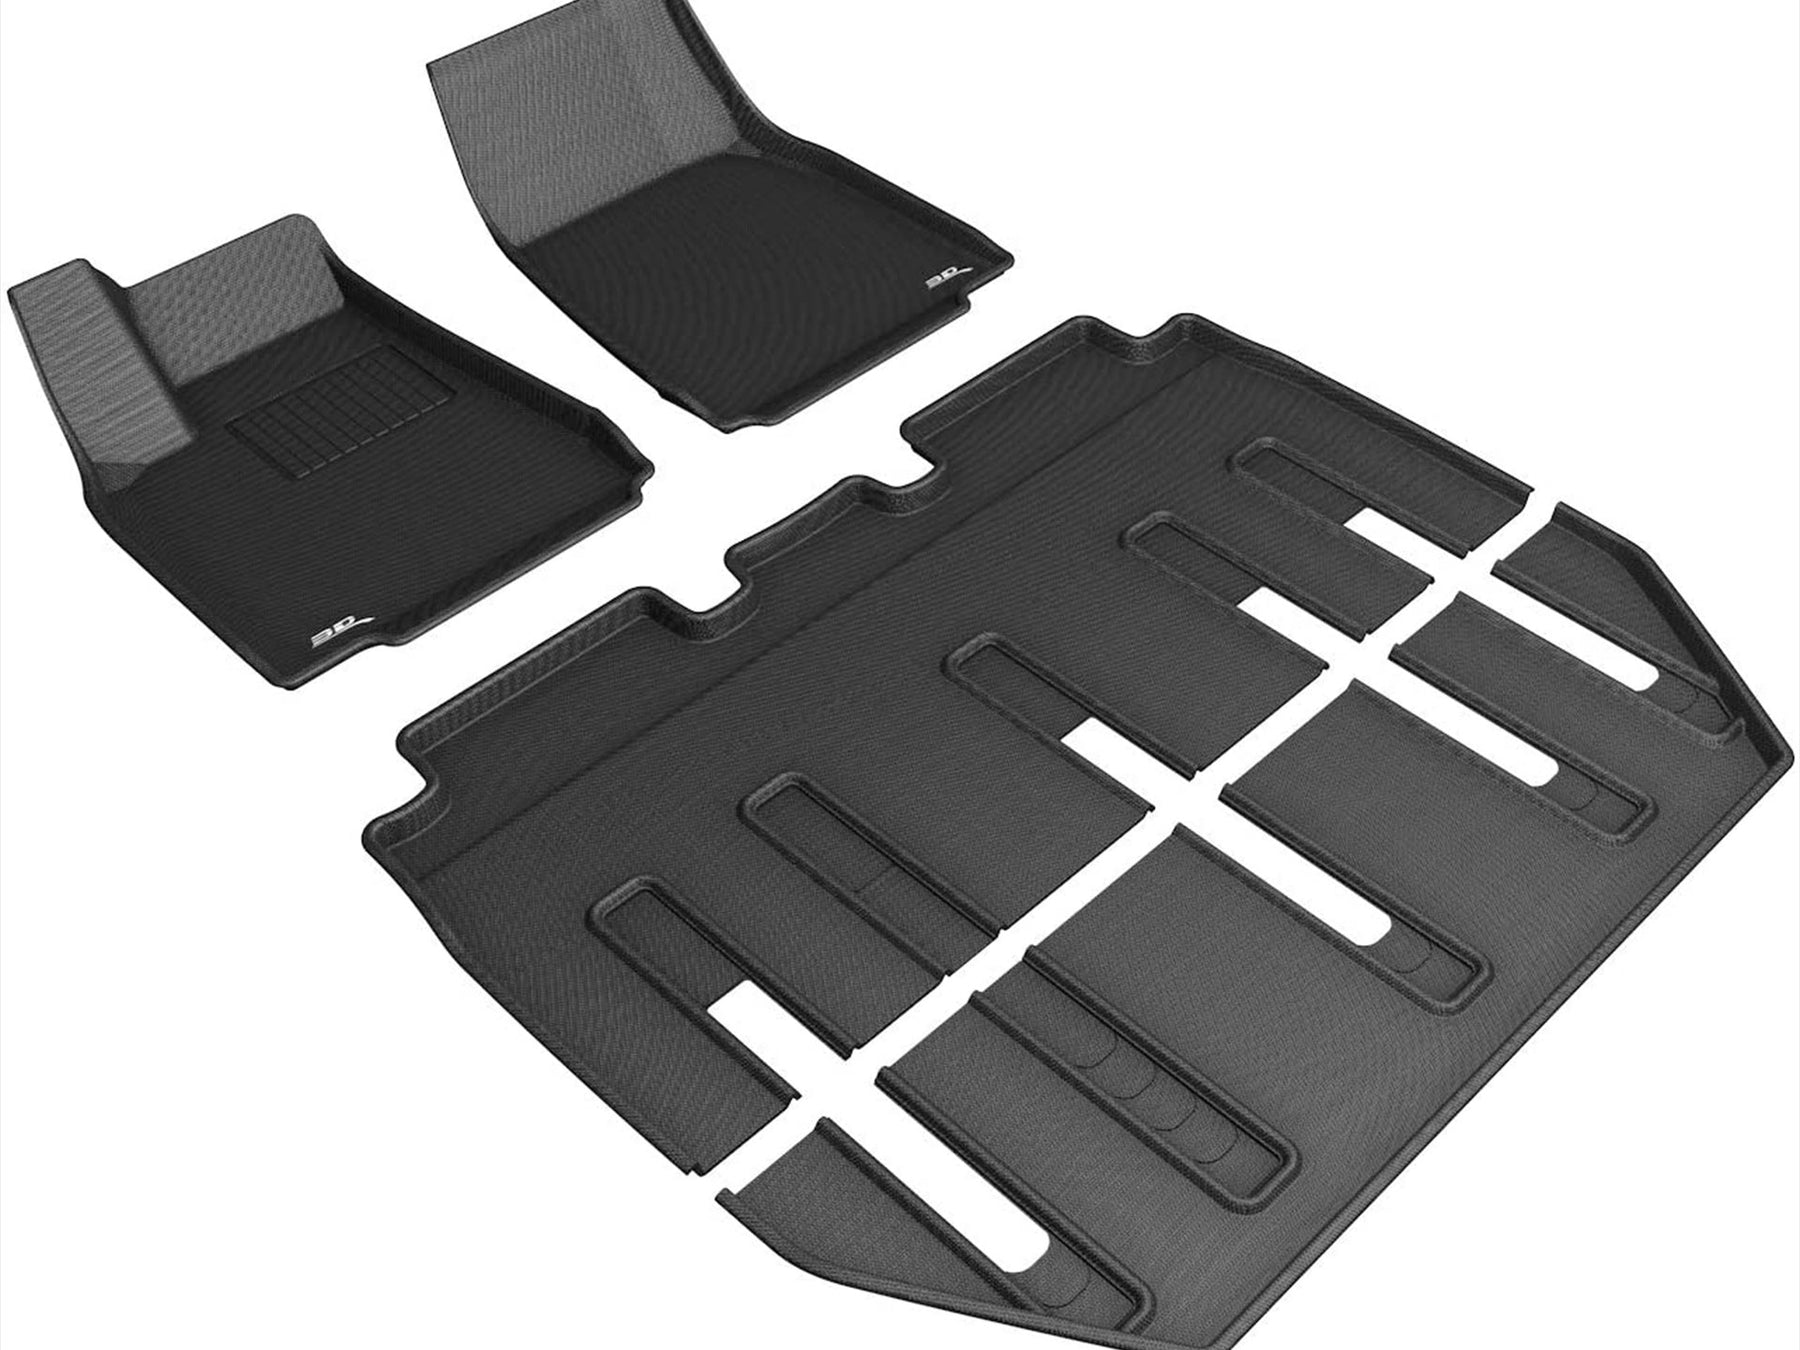 3D Maxpider - Model X rubber mats